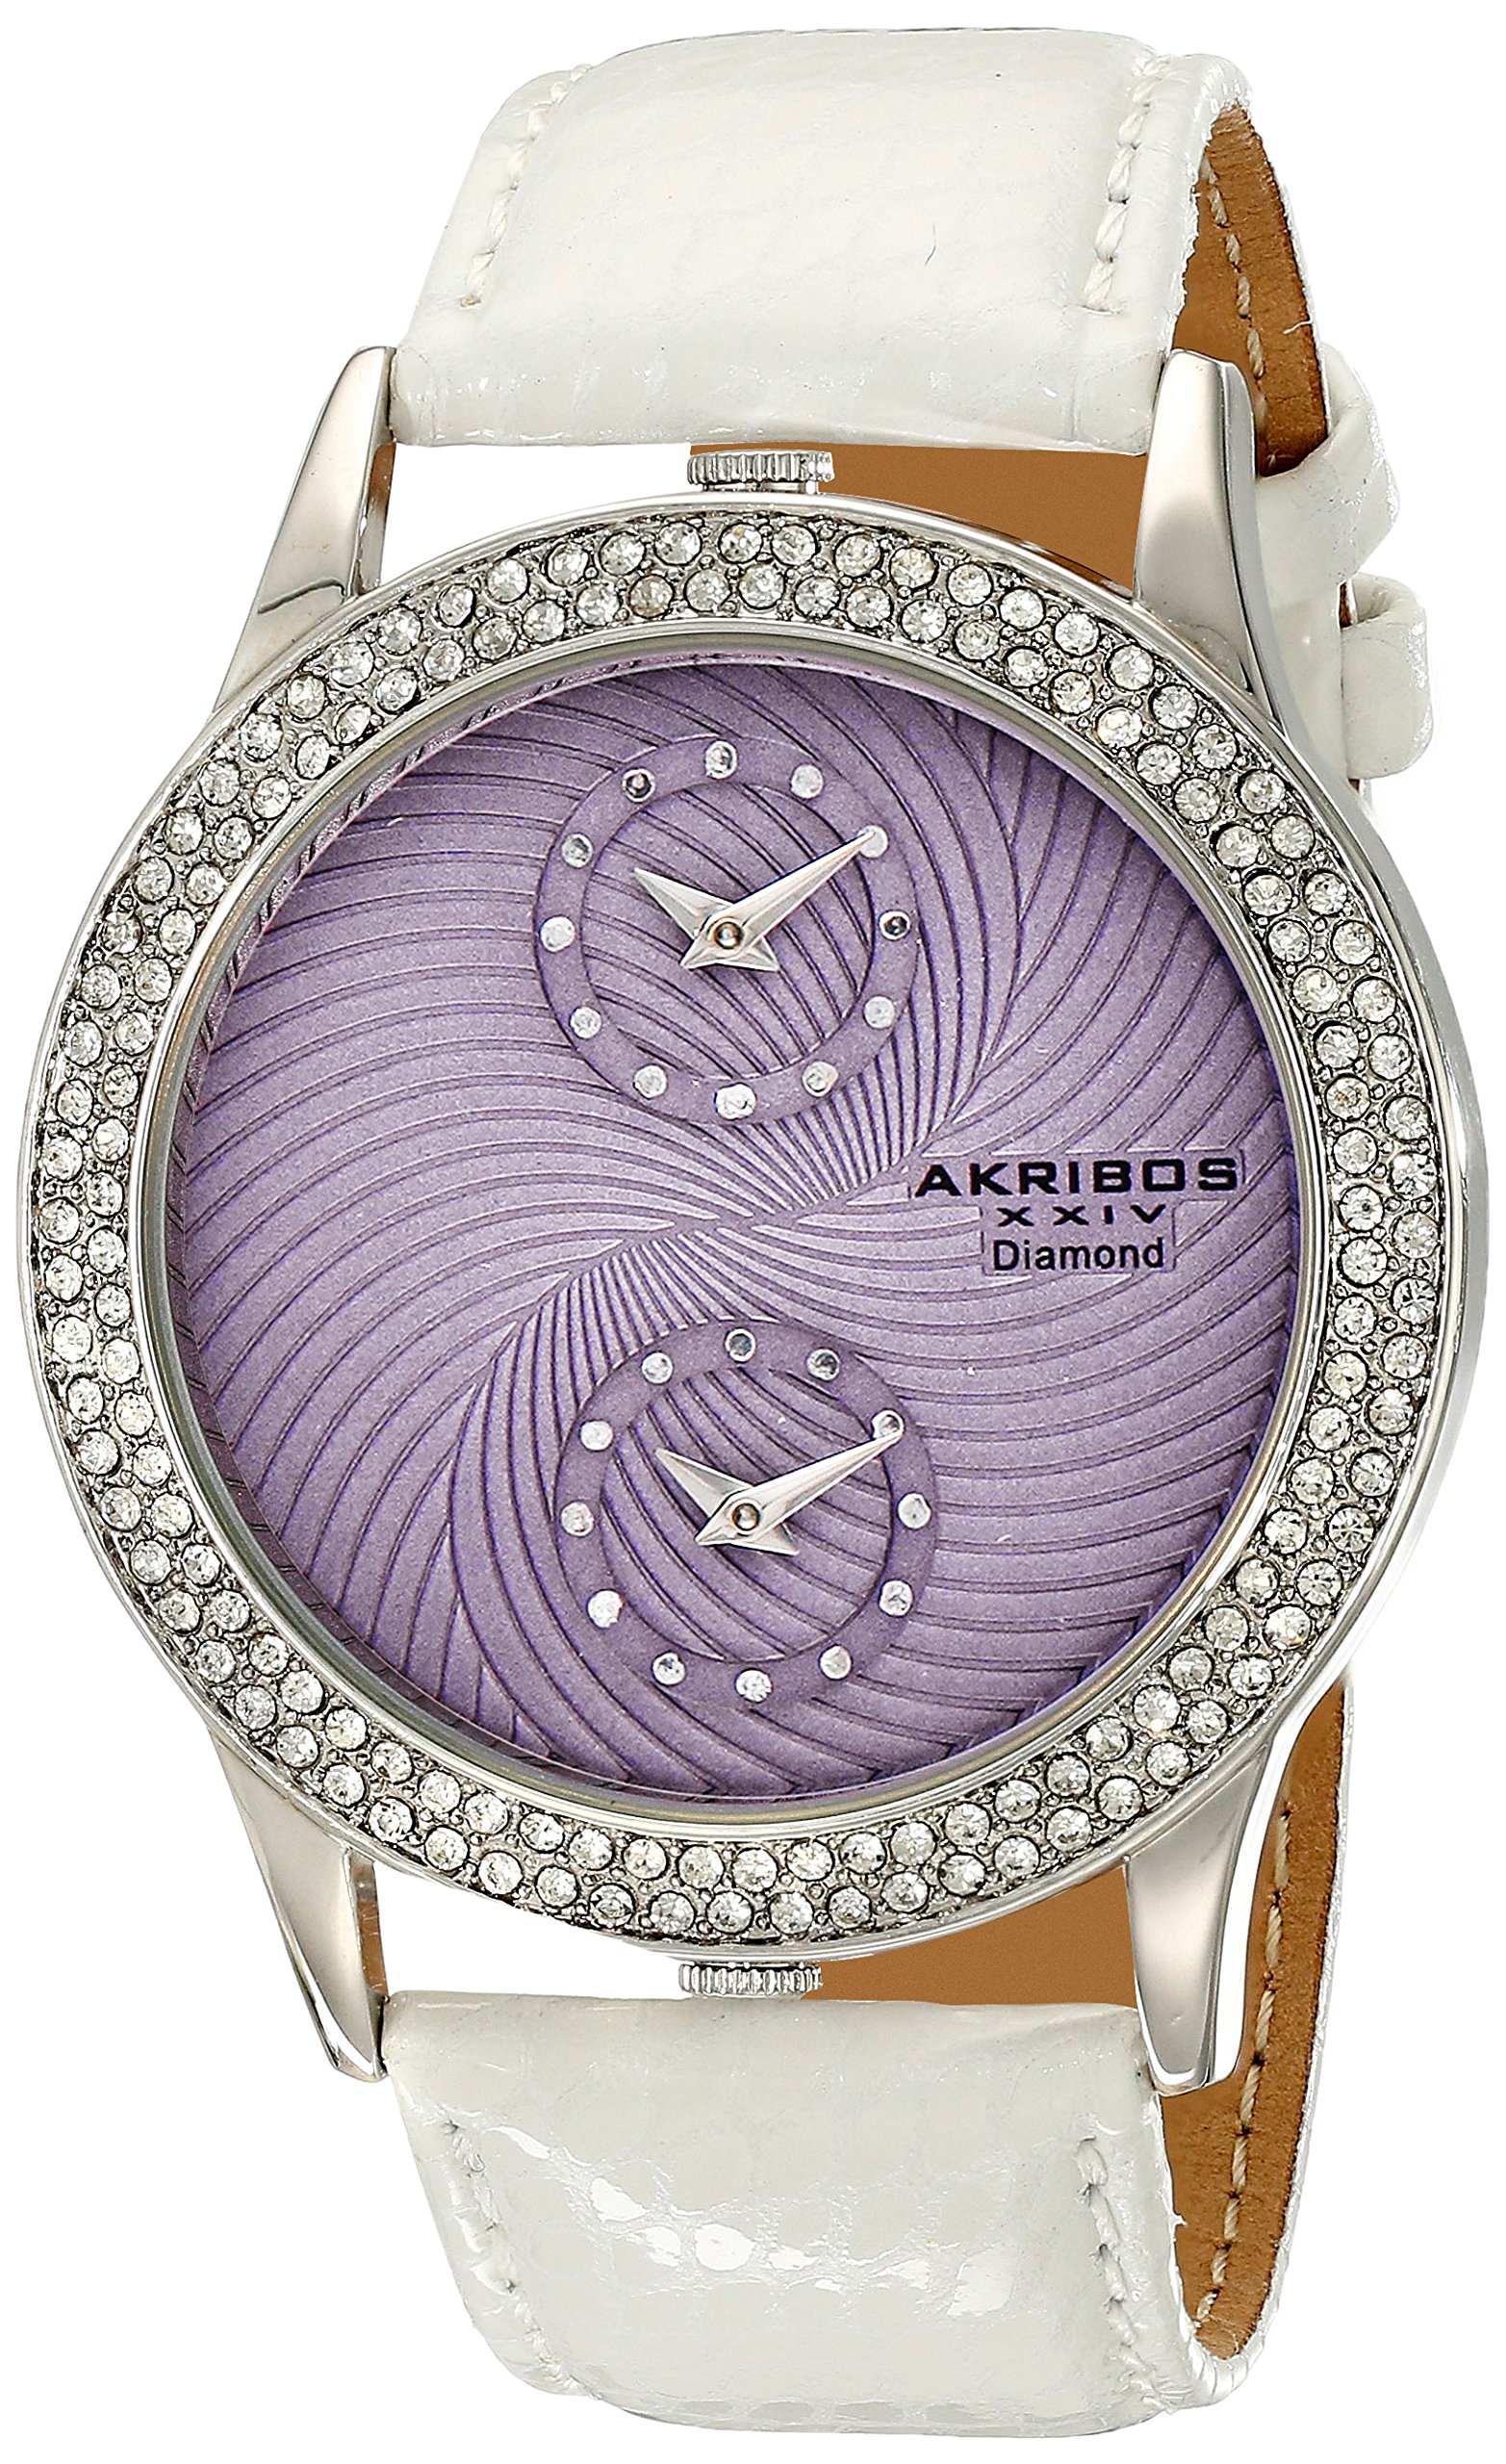 Akribos XXIV Women's AK569WT Lady Diamond Dual Time Leather Strap Watch